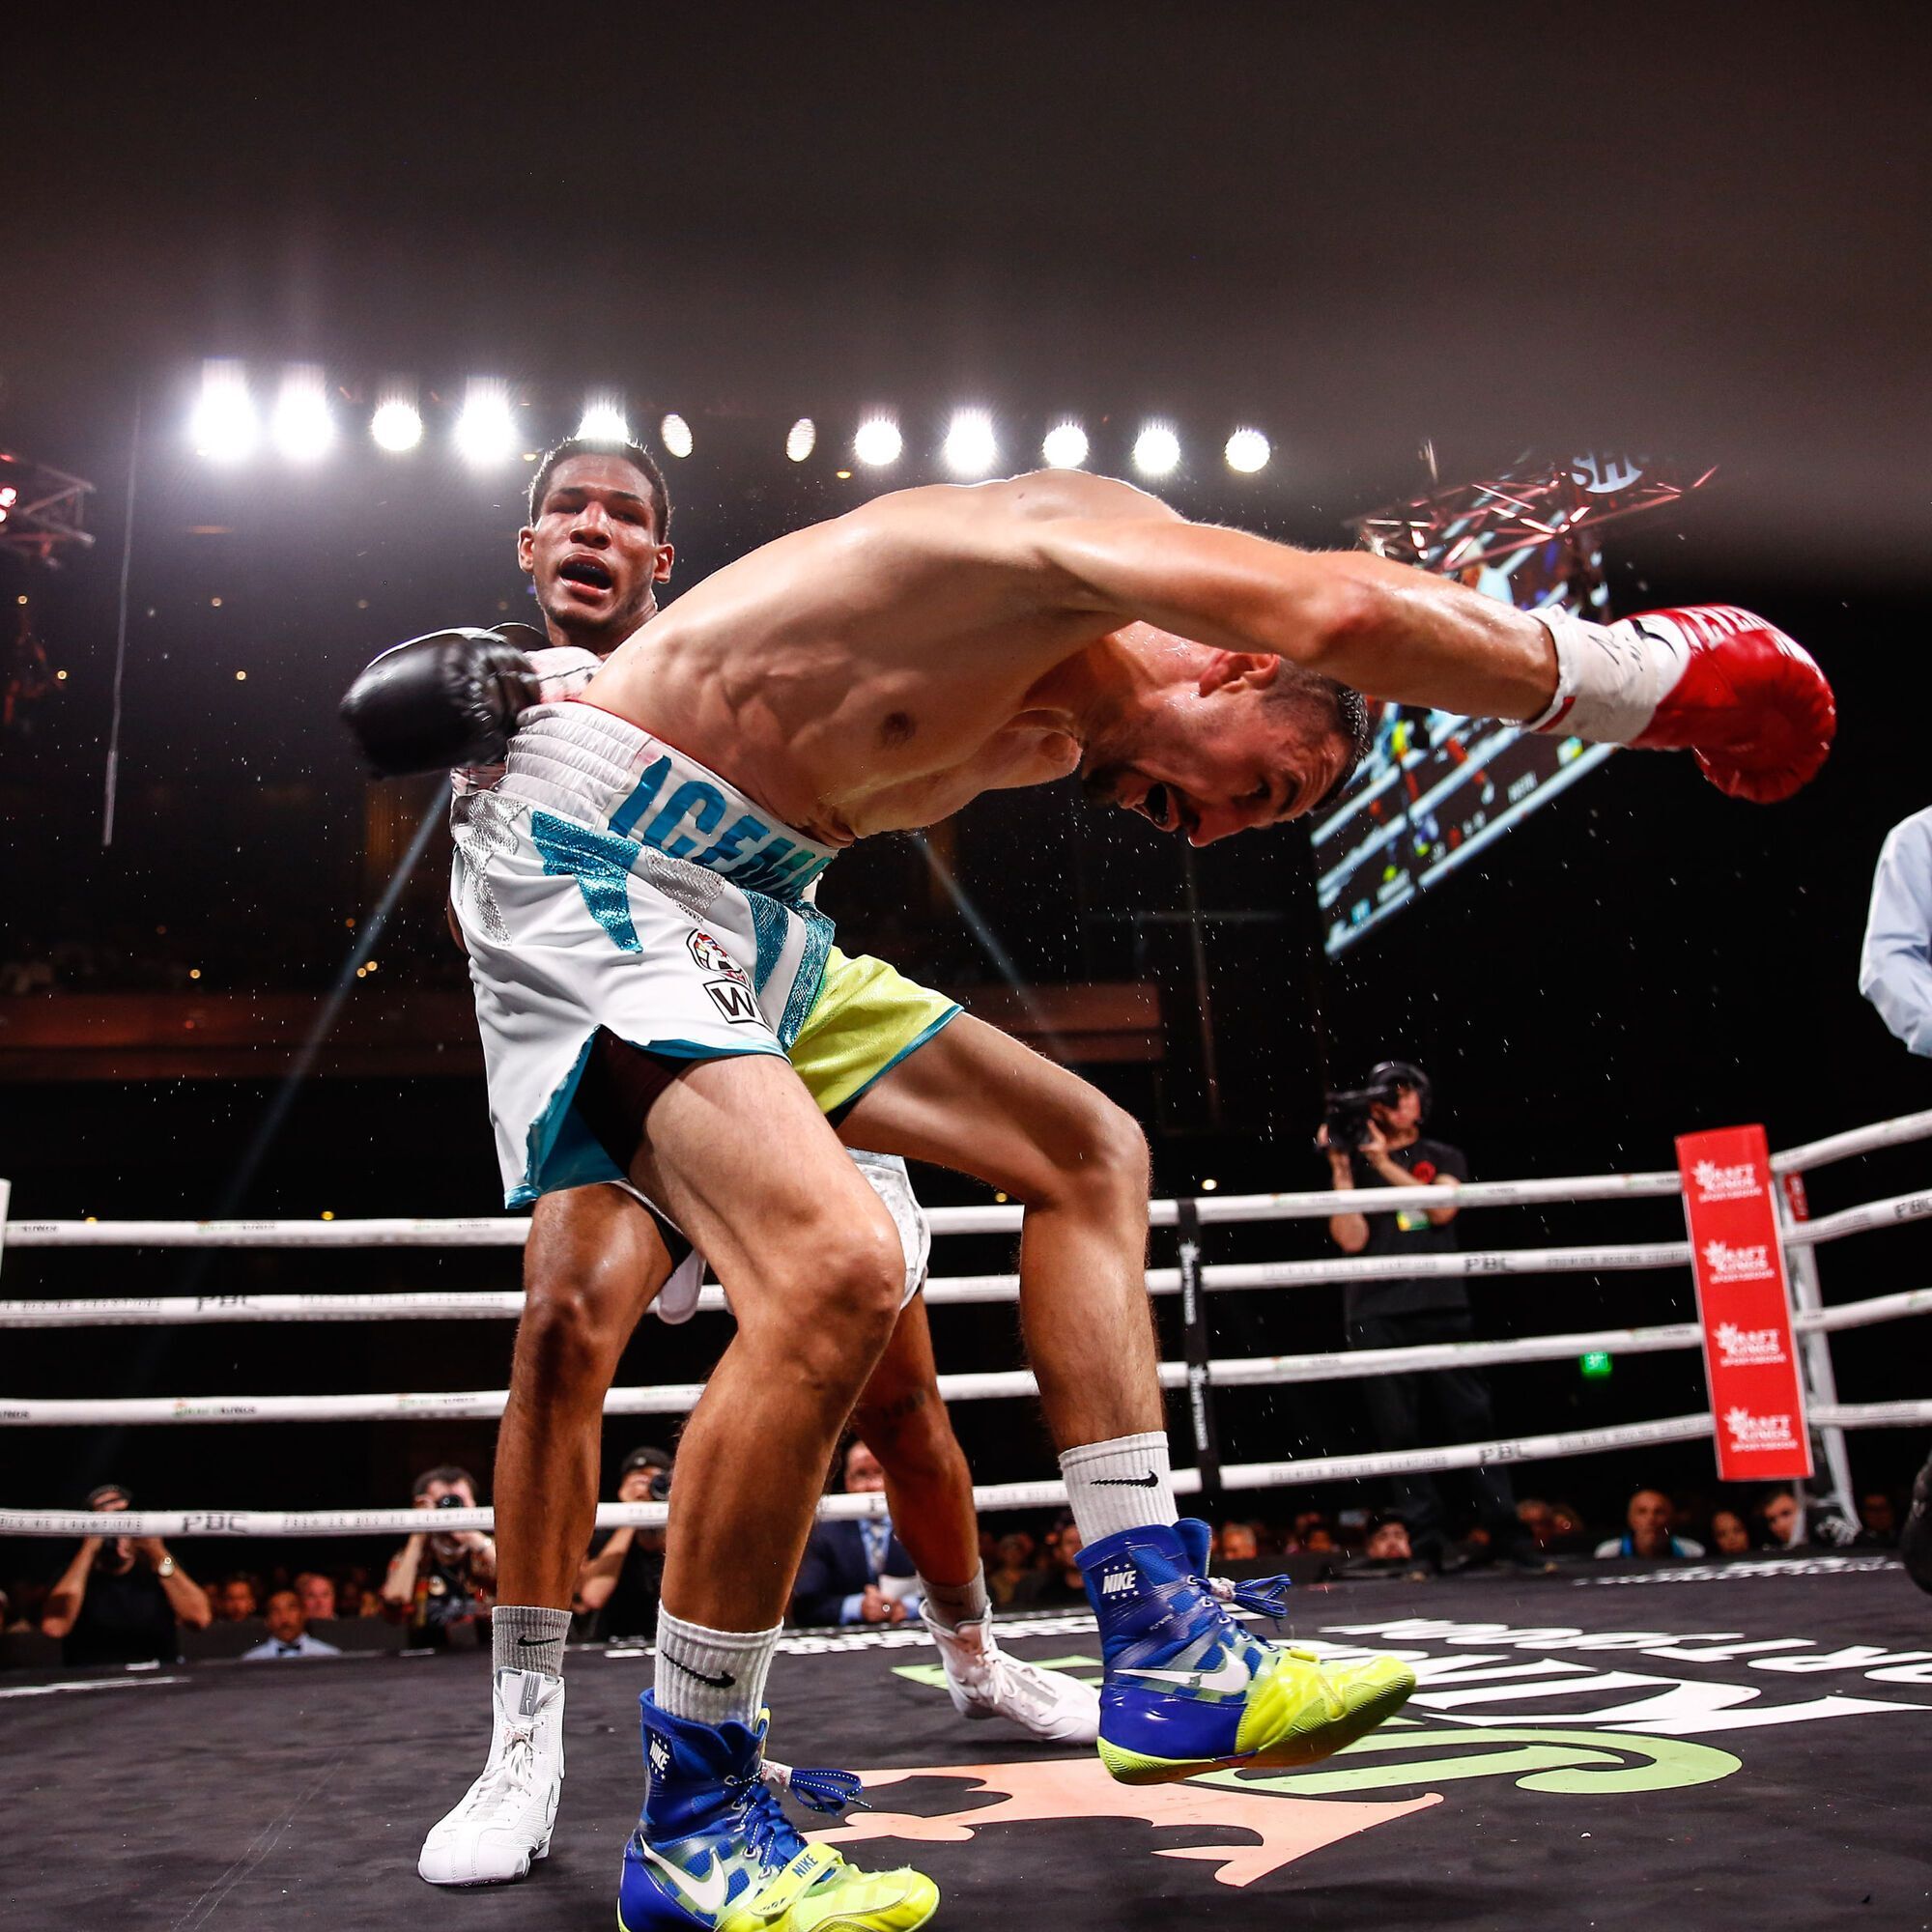 Знаменитый украинский боксер проиграл нокаутом, угодив по ходу боя в нокдаун. Видео